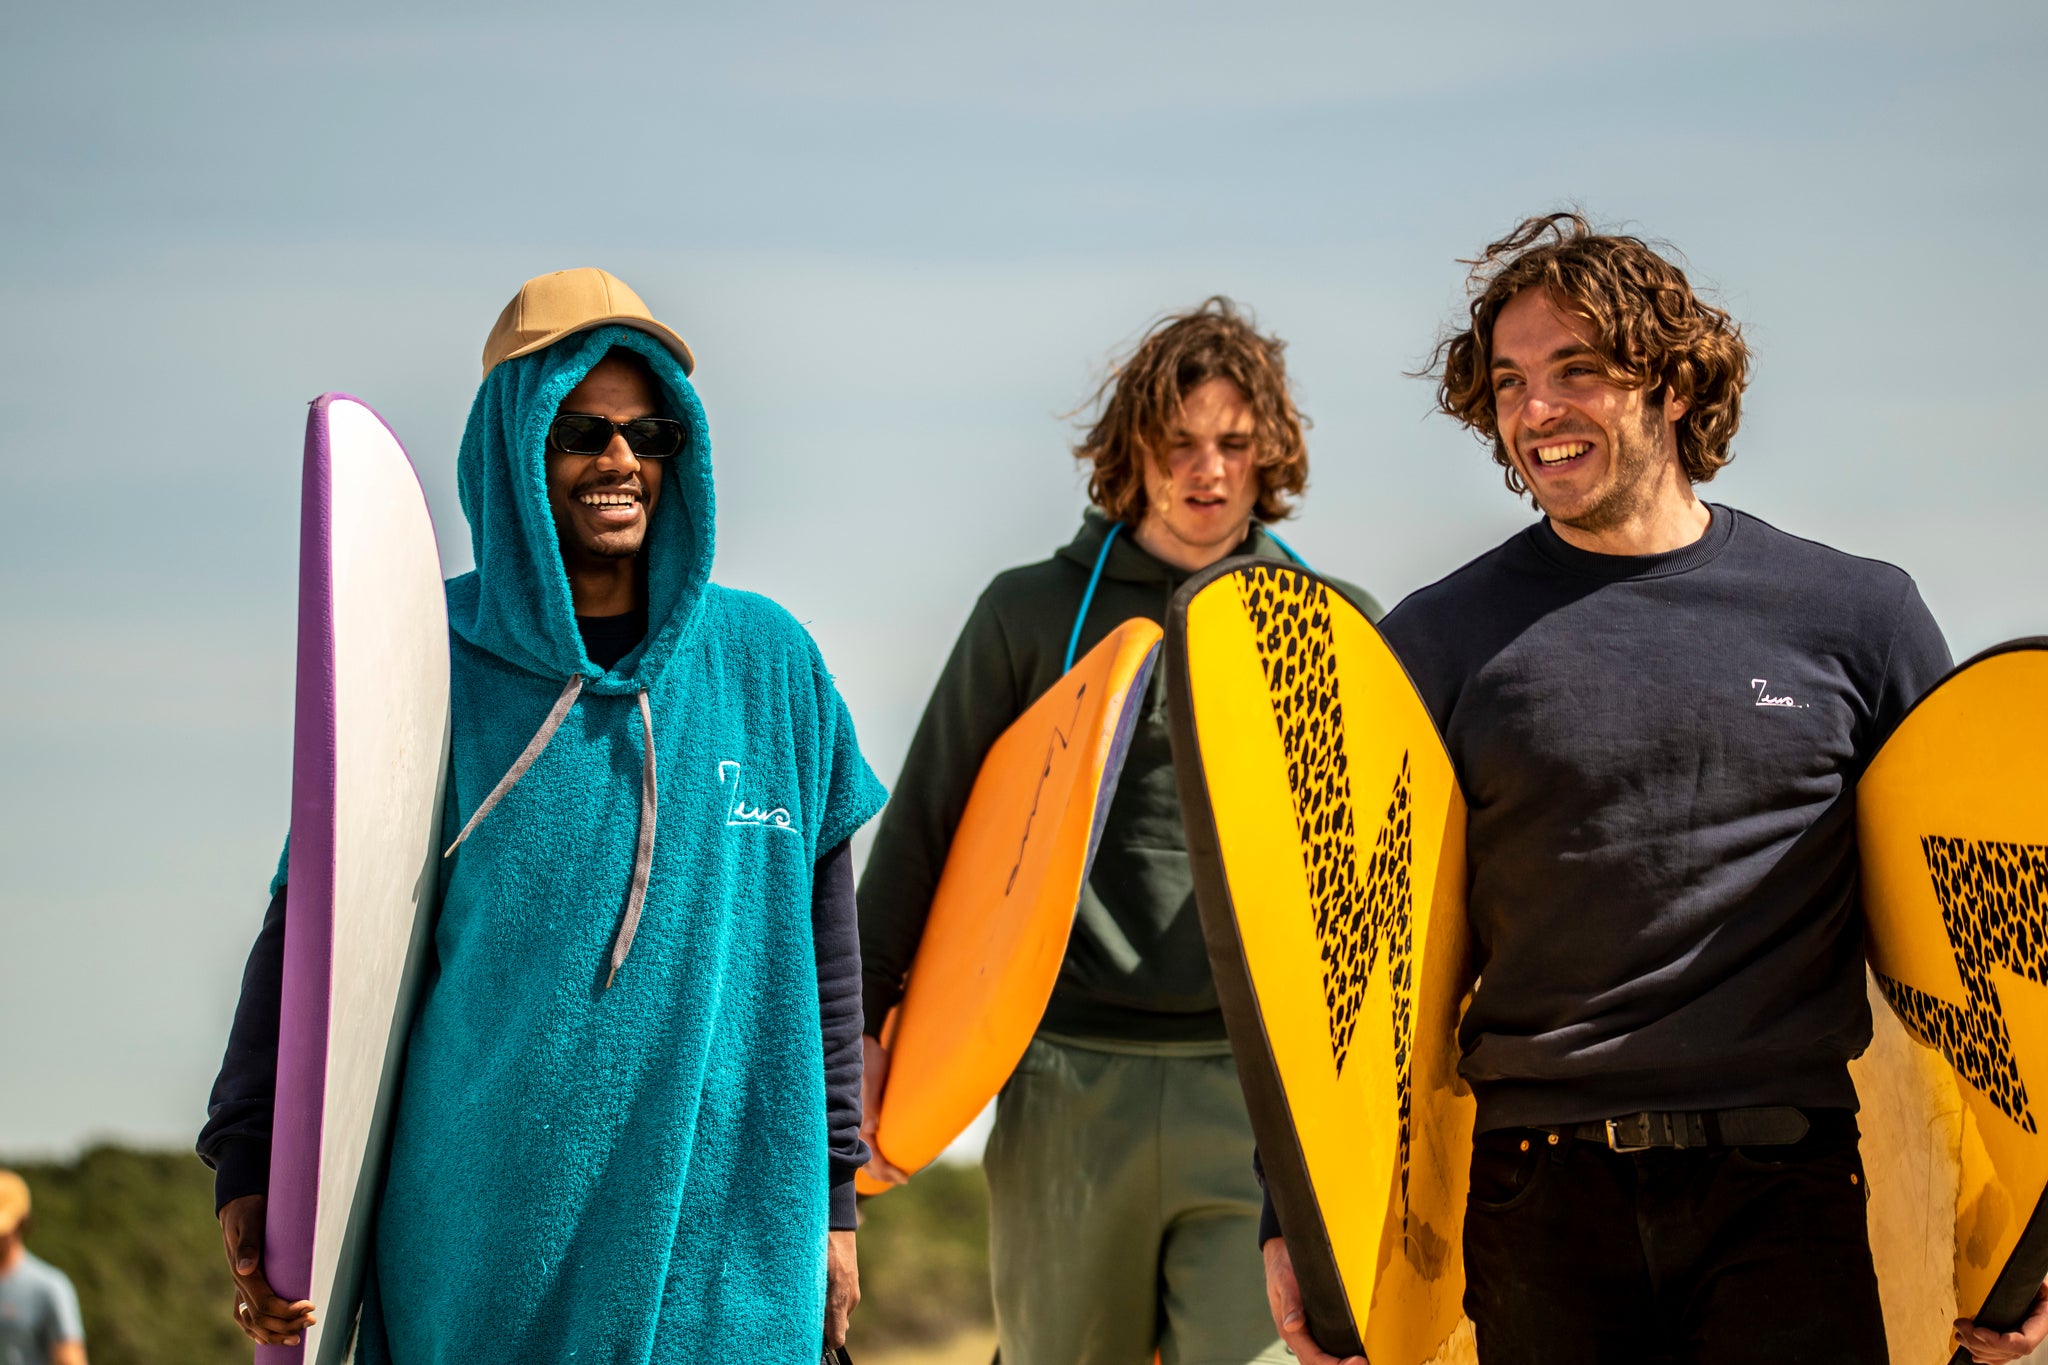 Un grupo de surfistas cargando sus tablas de surf.